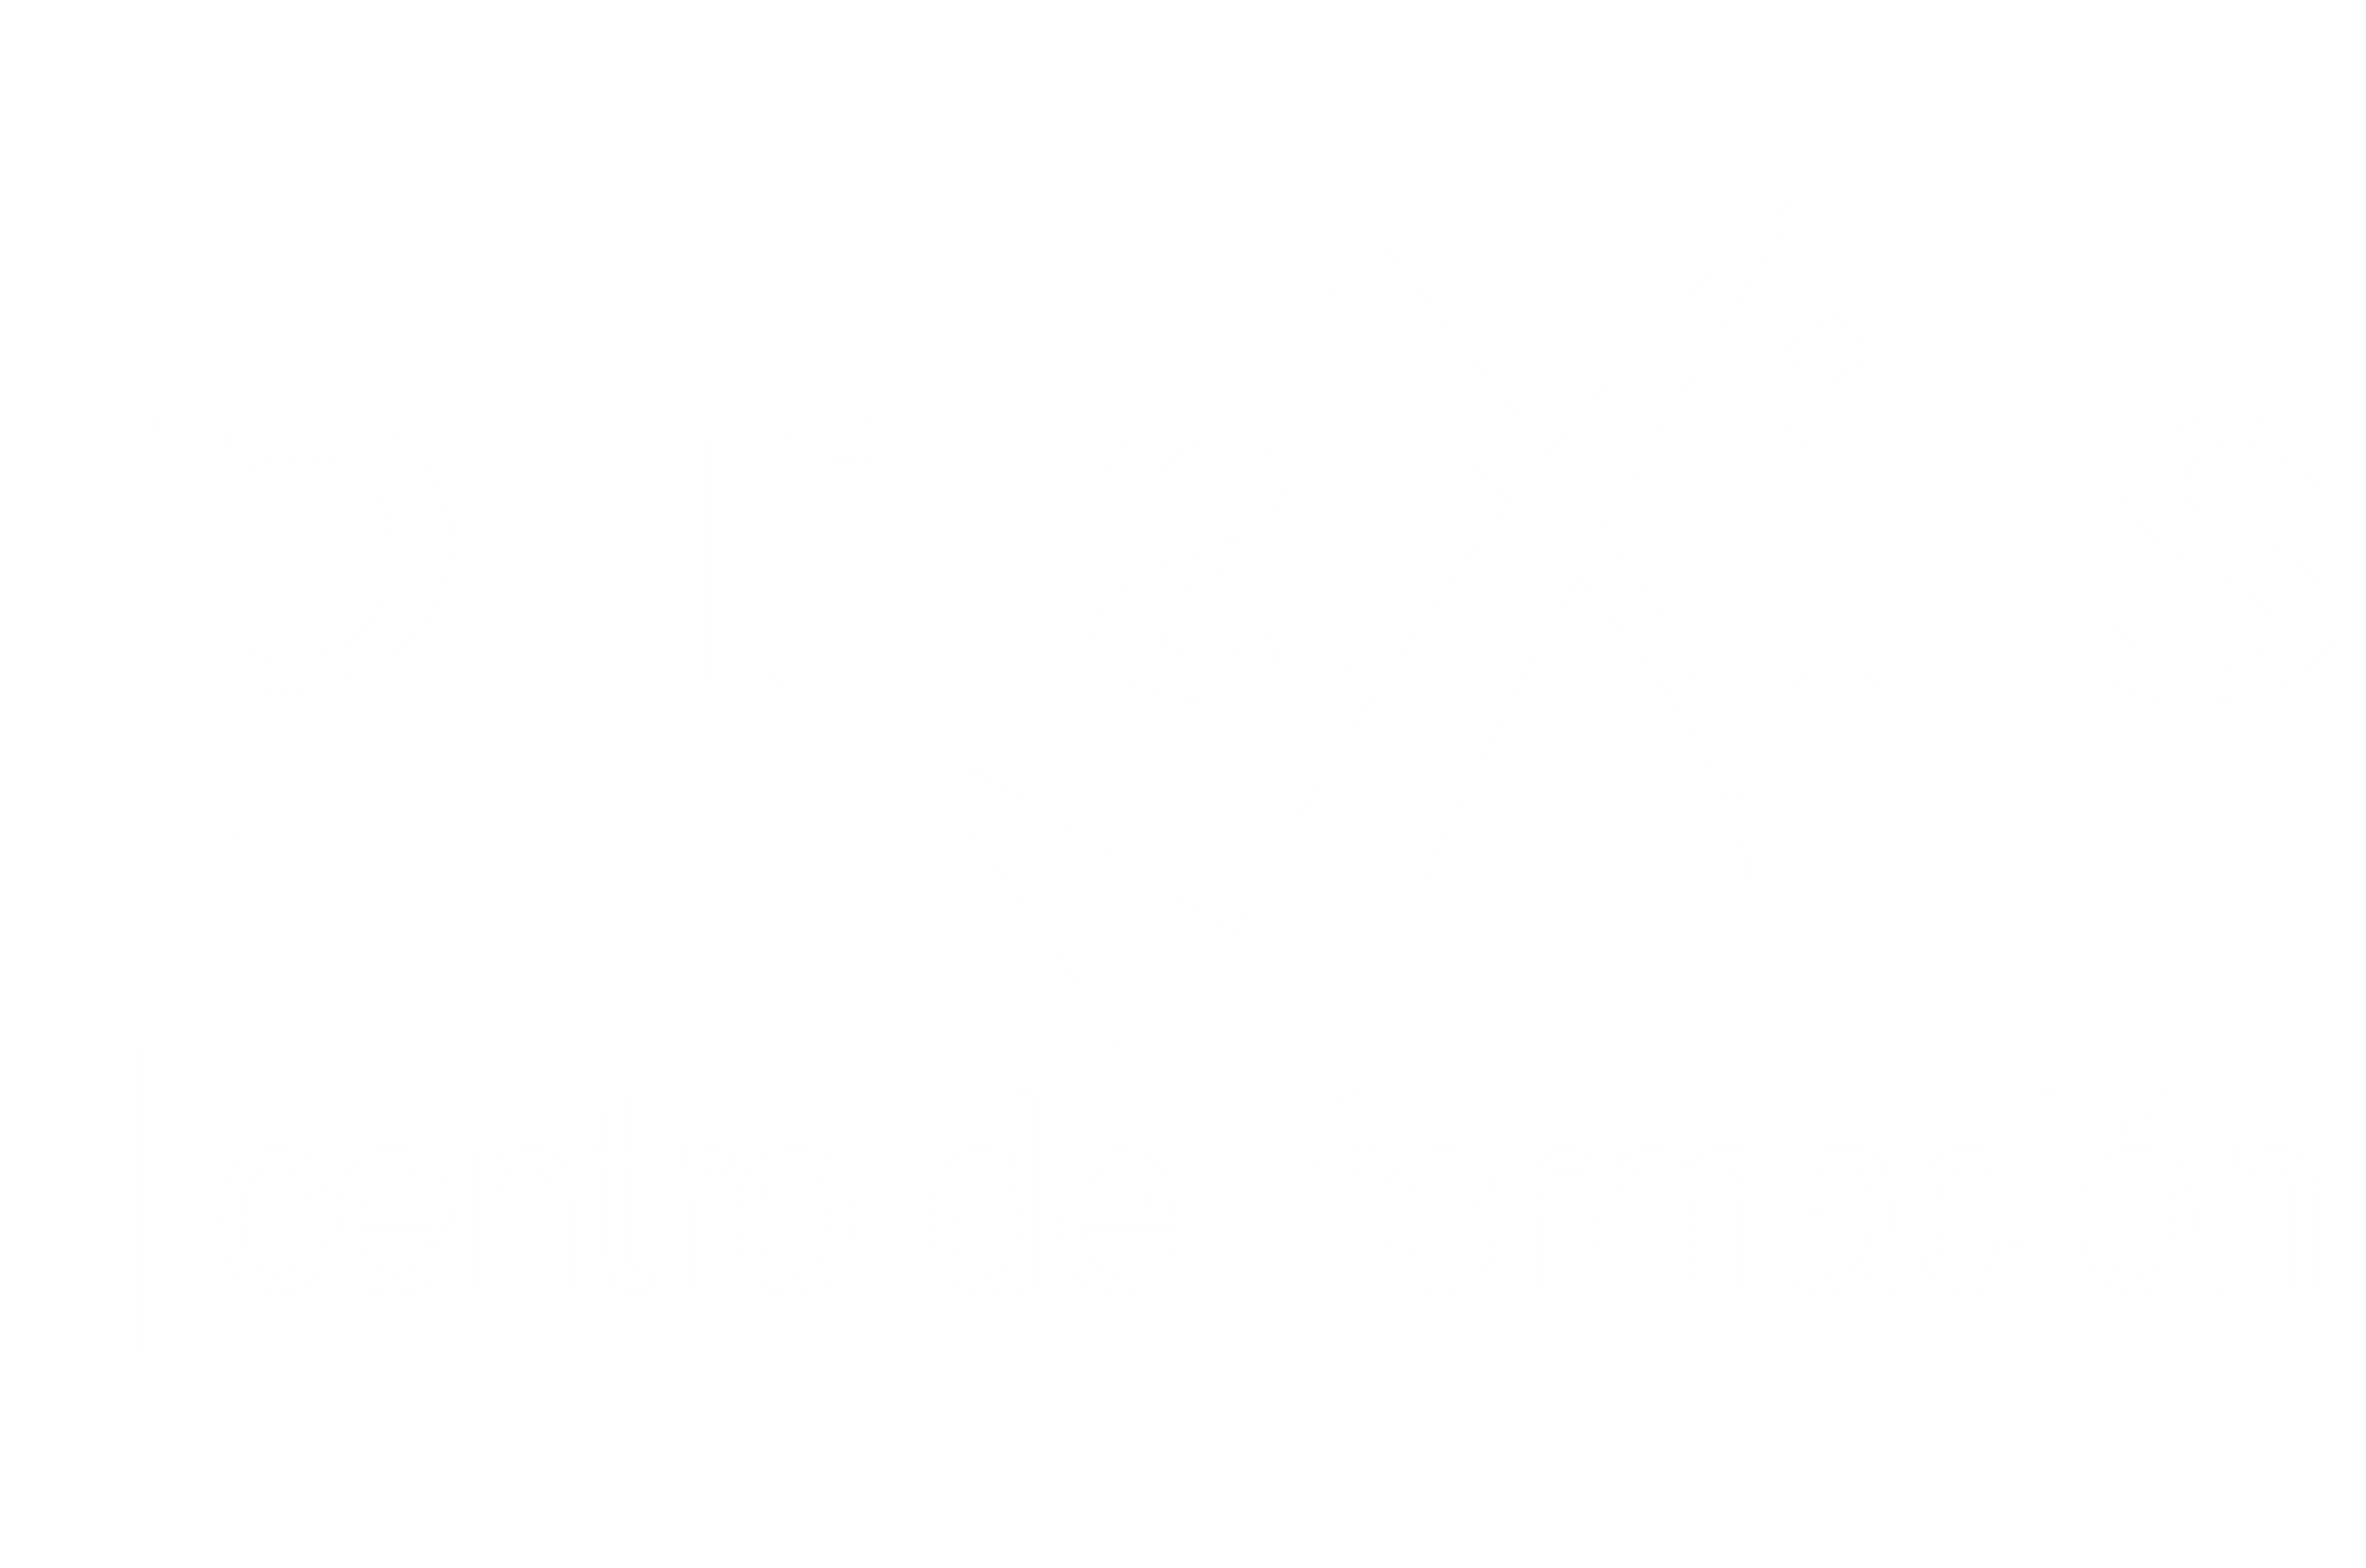 Centro de Formación Praxis - White